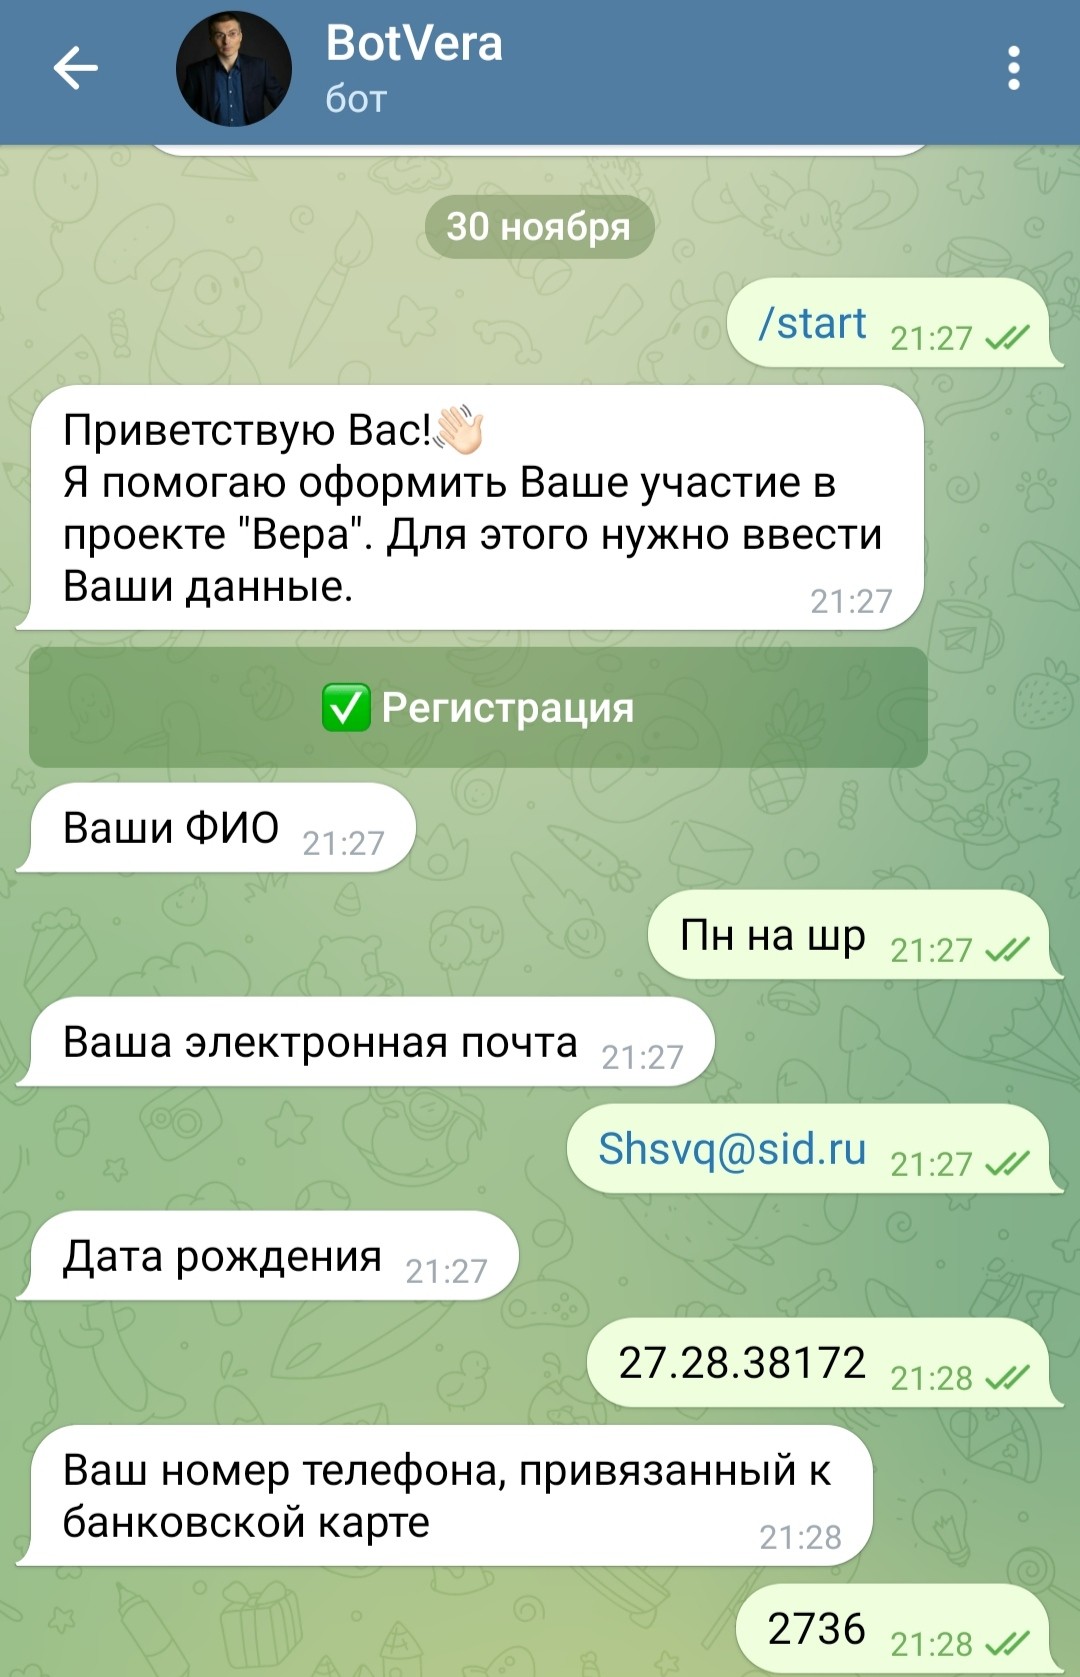 Александр Гонгадзе Вольный Росс телеграм бот